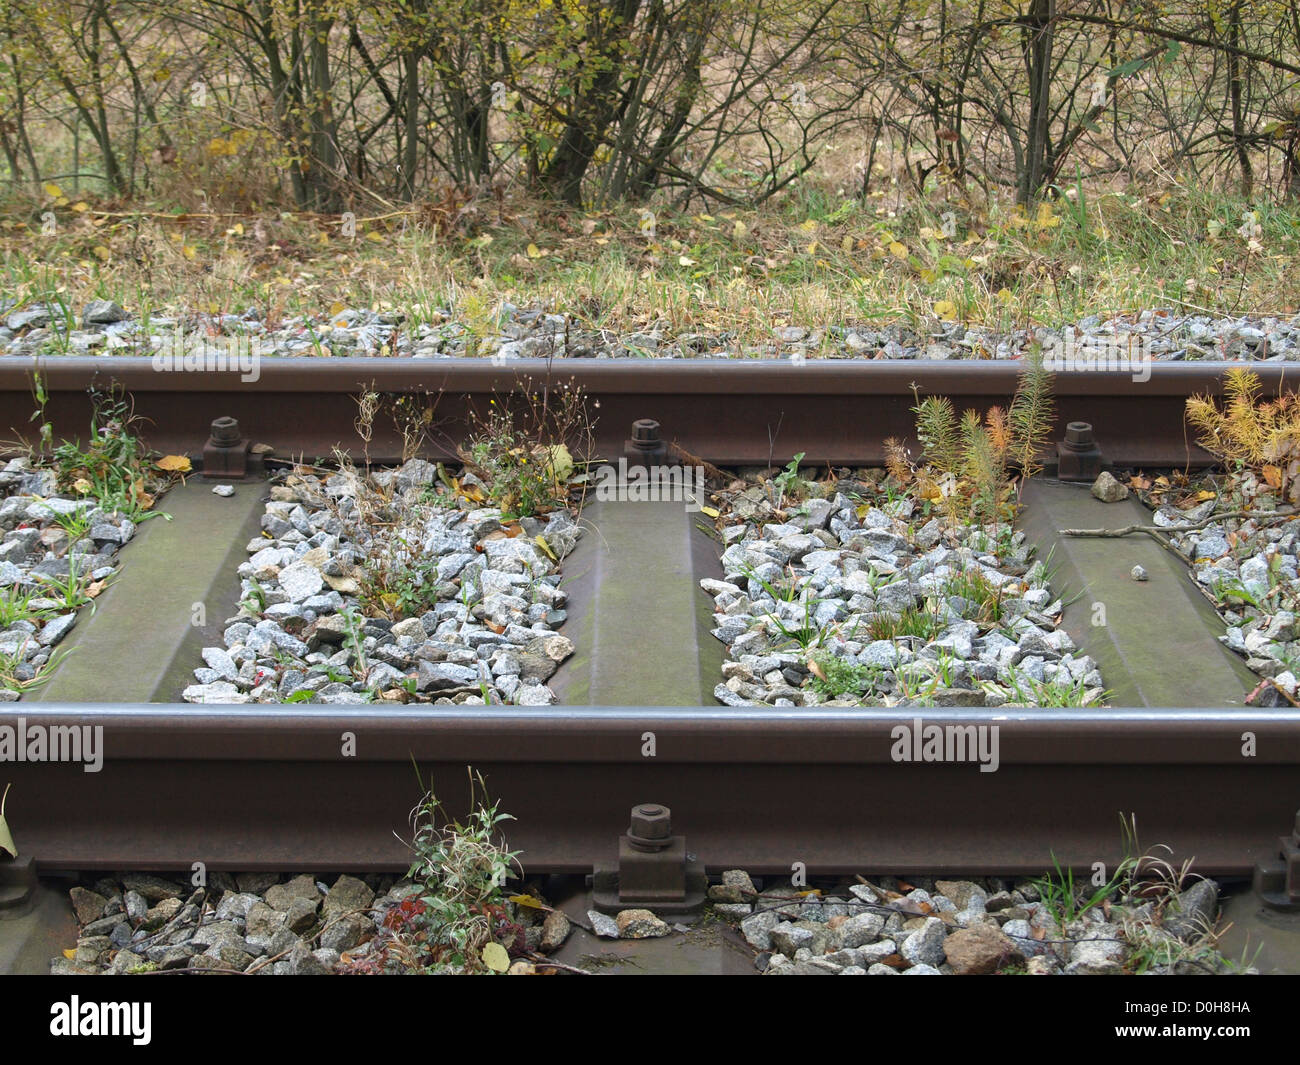 Eisenbahnlinien / Eisenbahnschienen Stockfotografie - Alamy